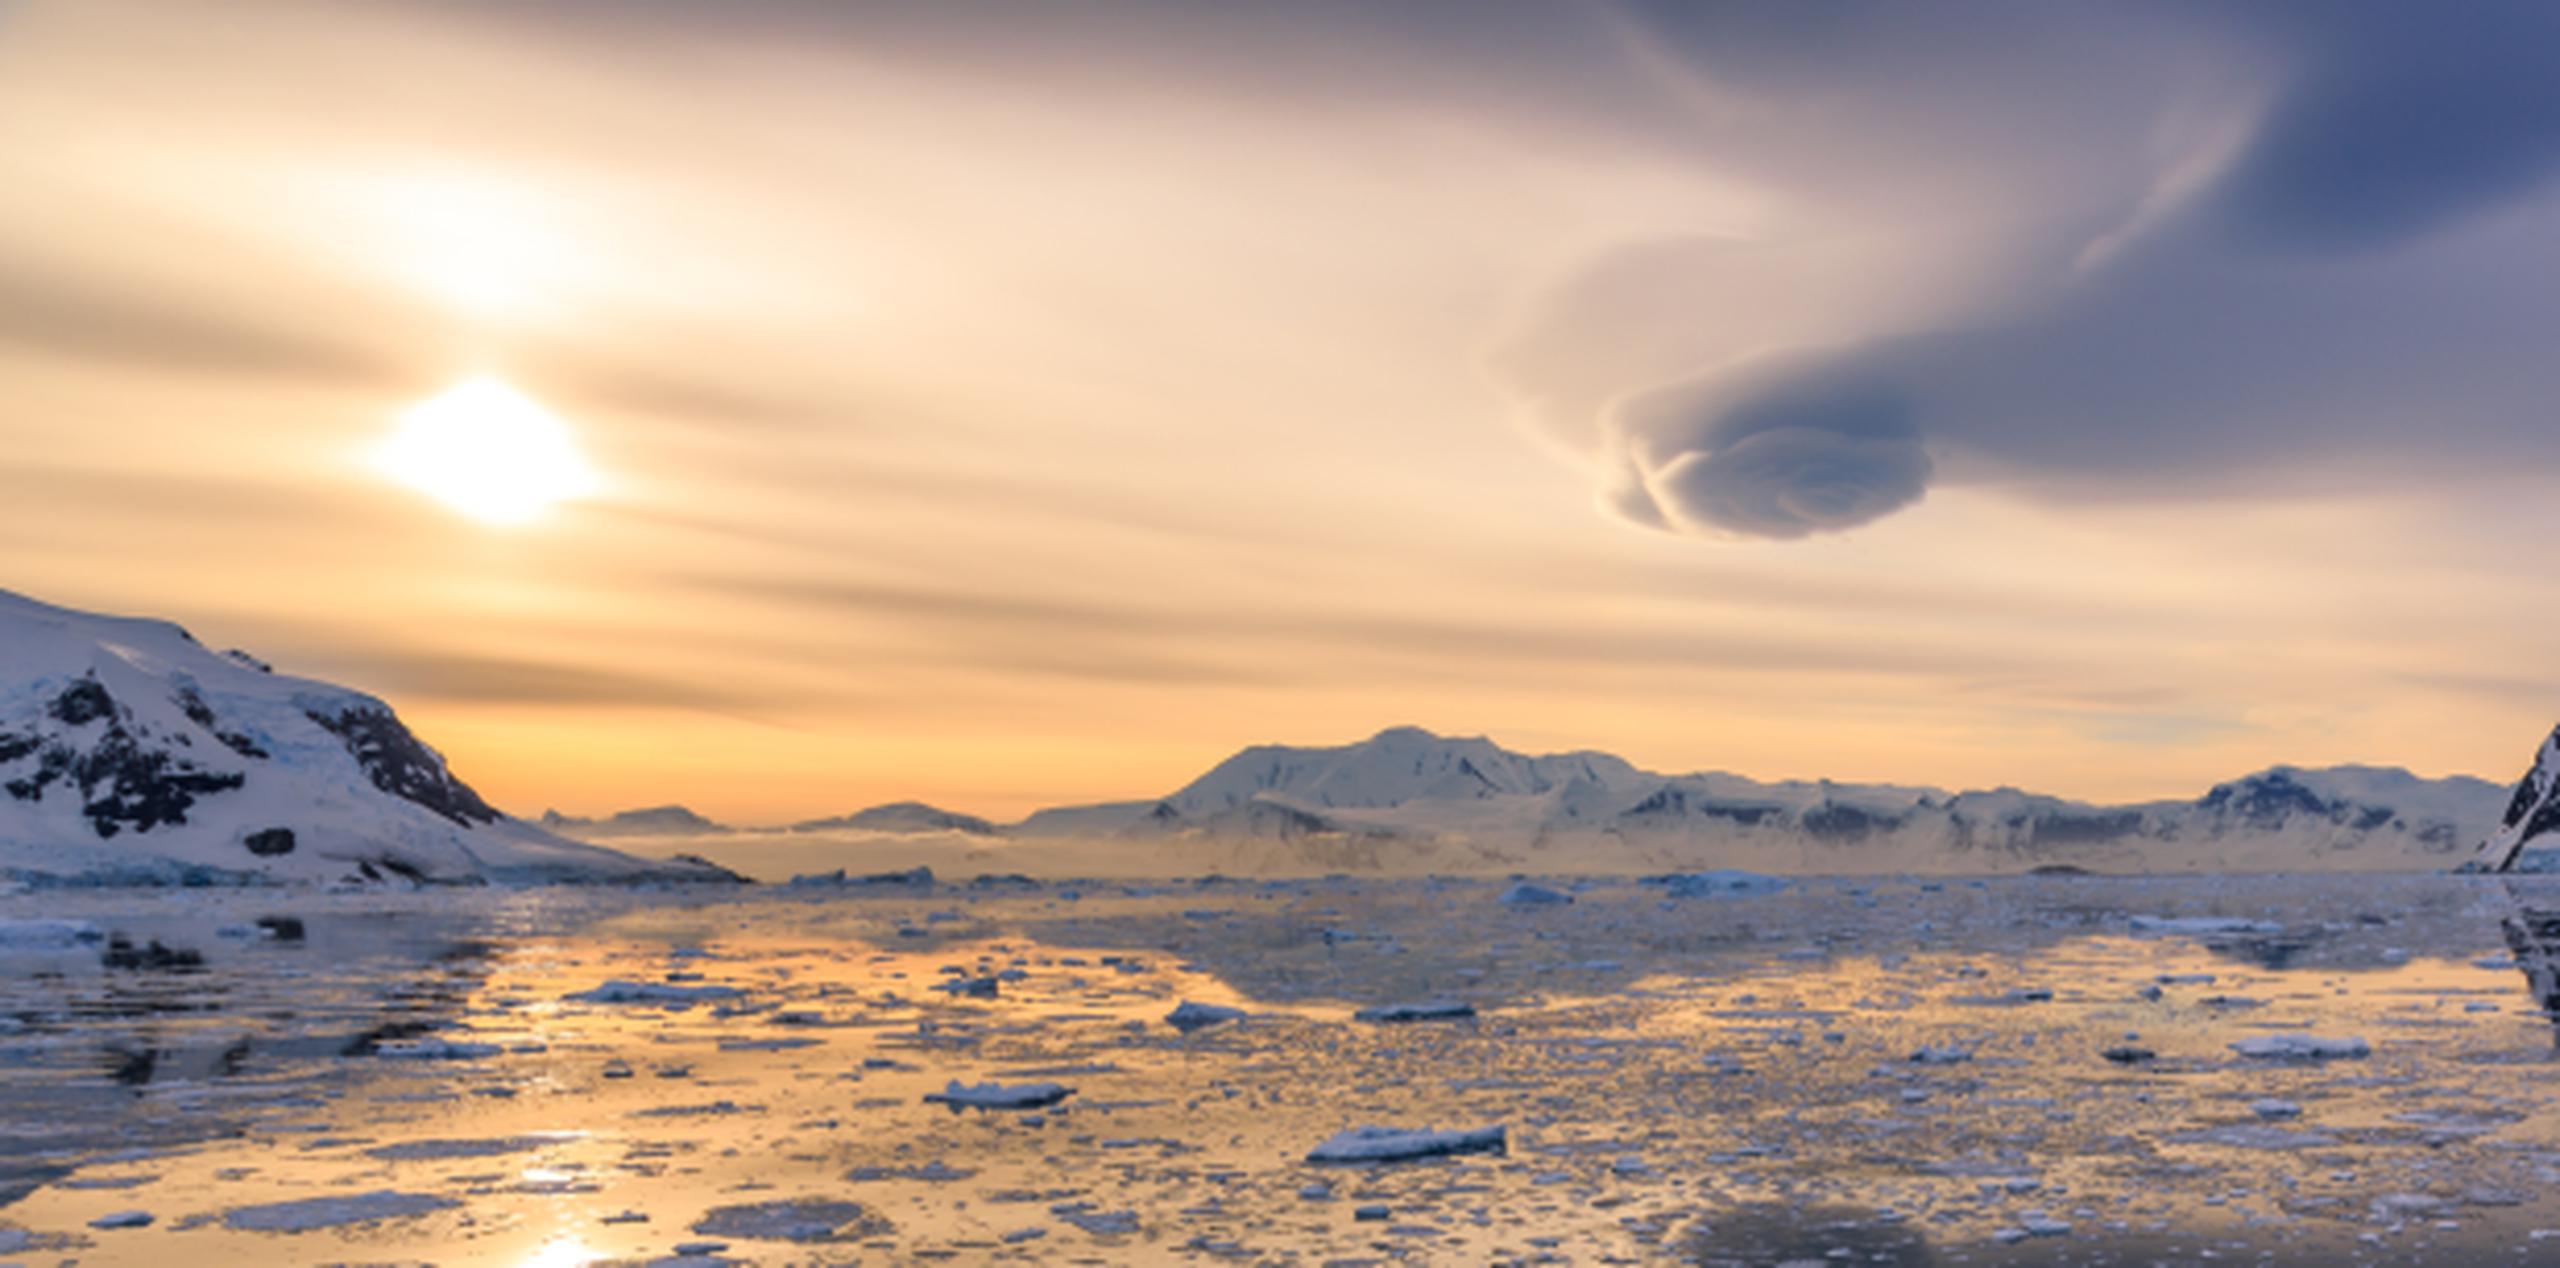 El agujero en la capa de ozono se detectó en 1985, a finales del invierno en el hemisferio Sur. (Shutterstock)